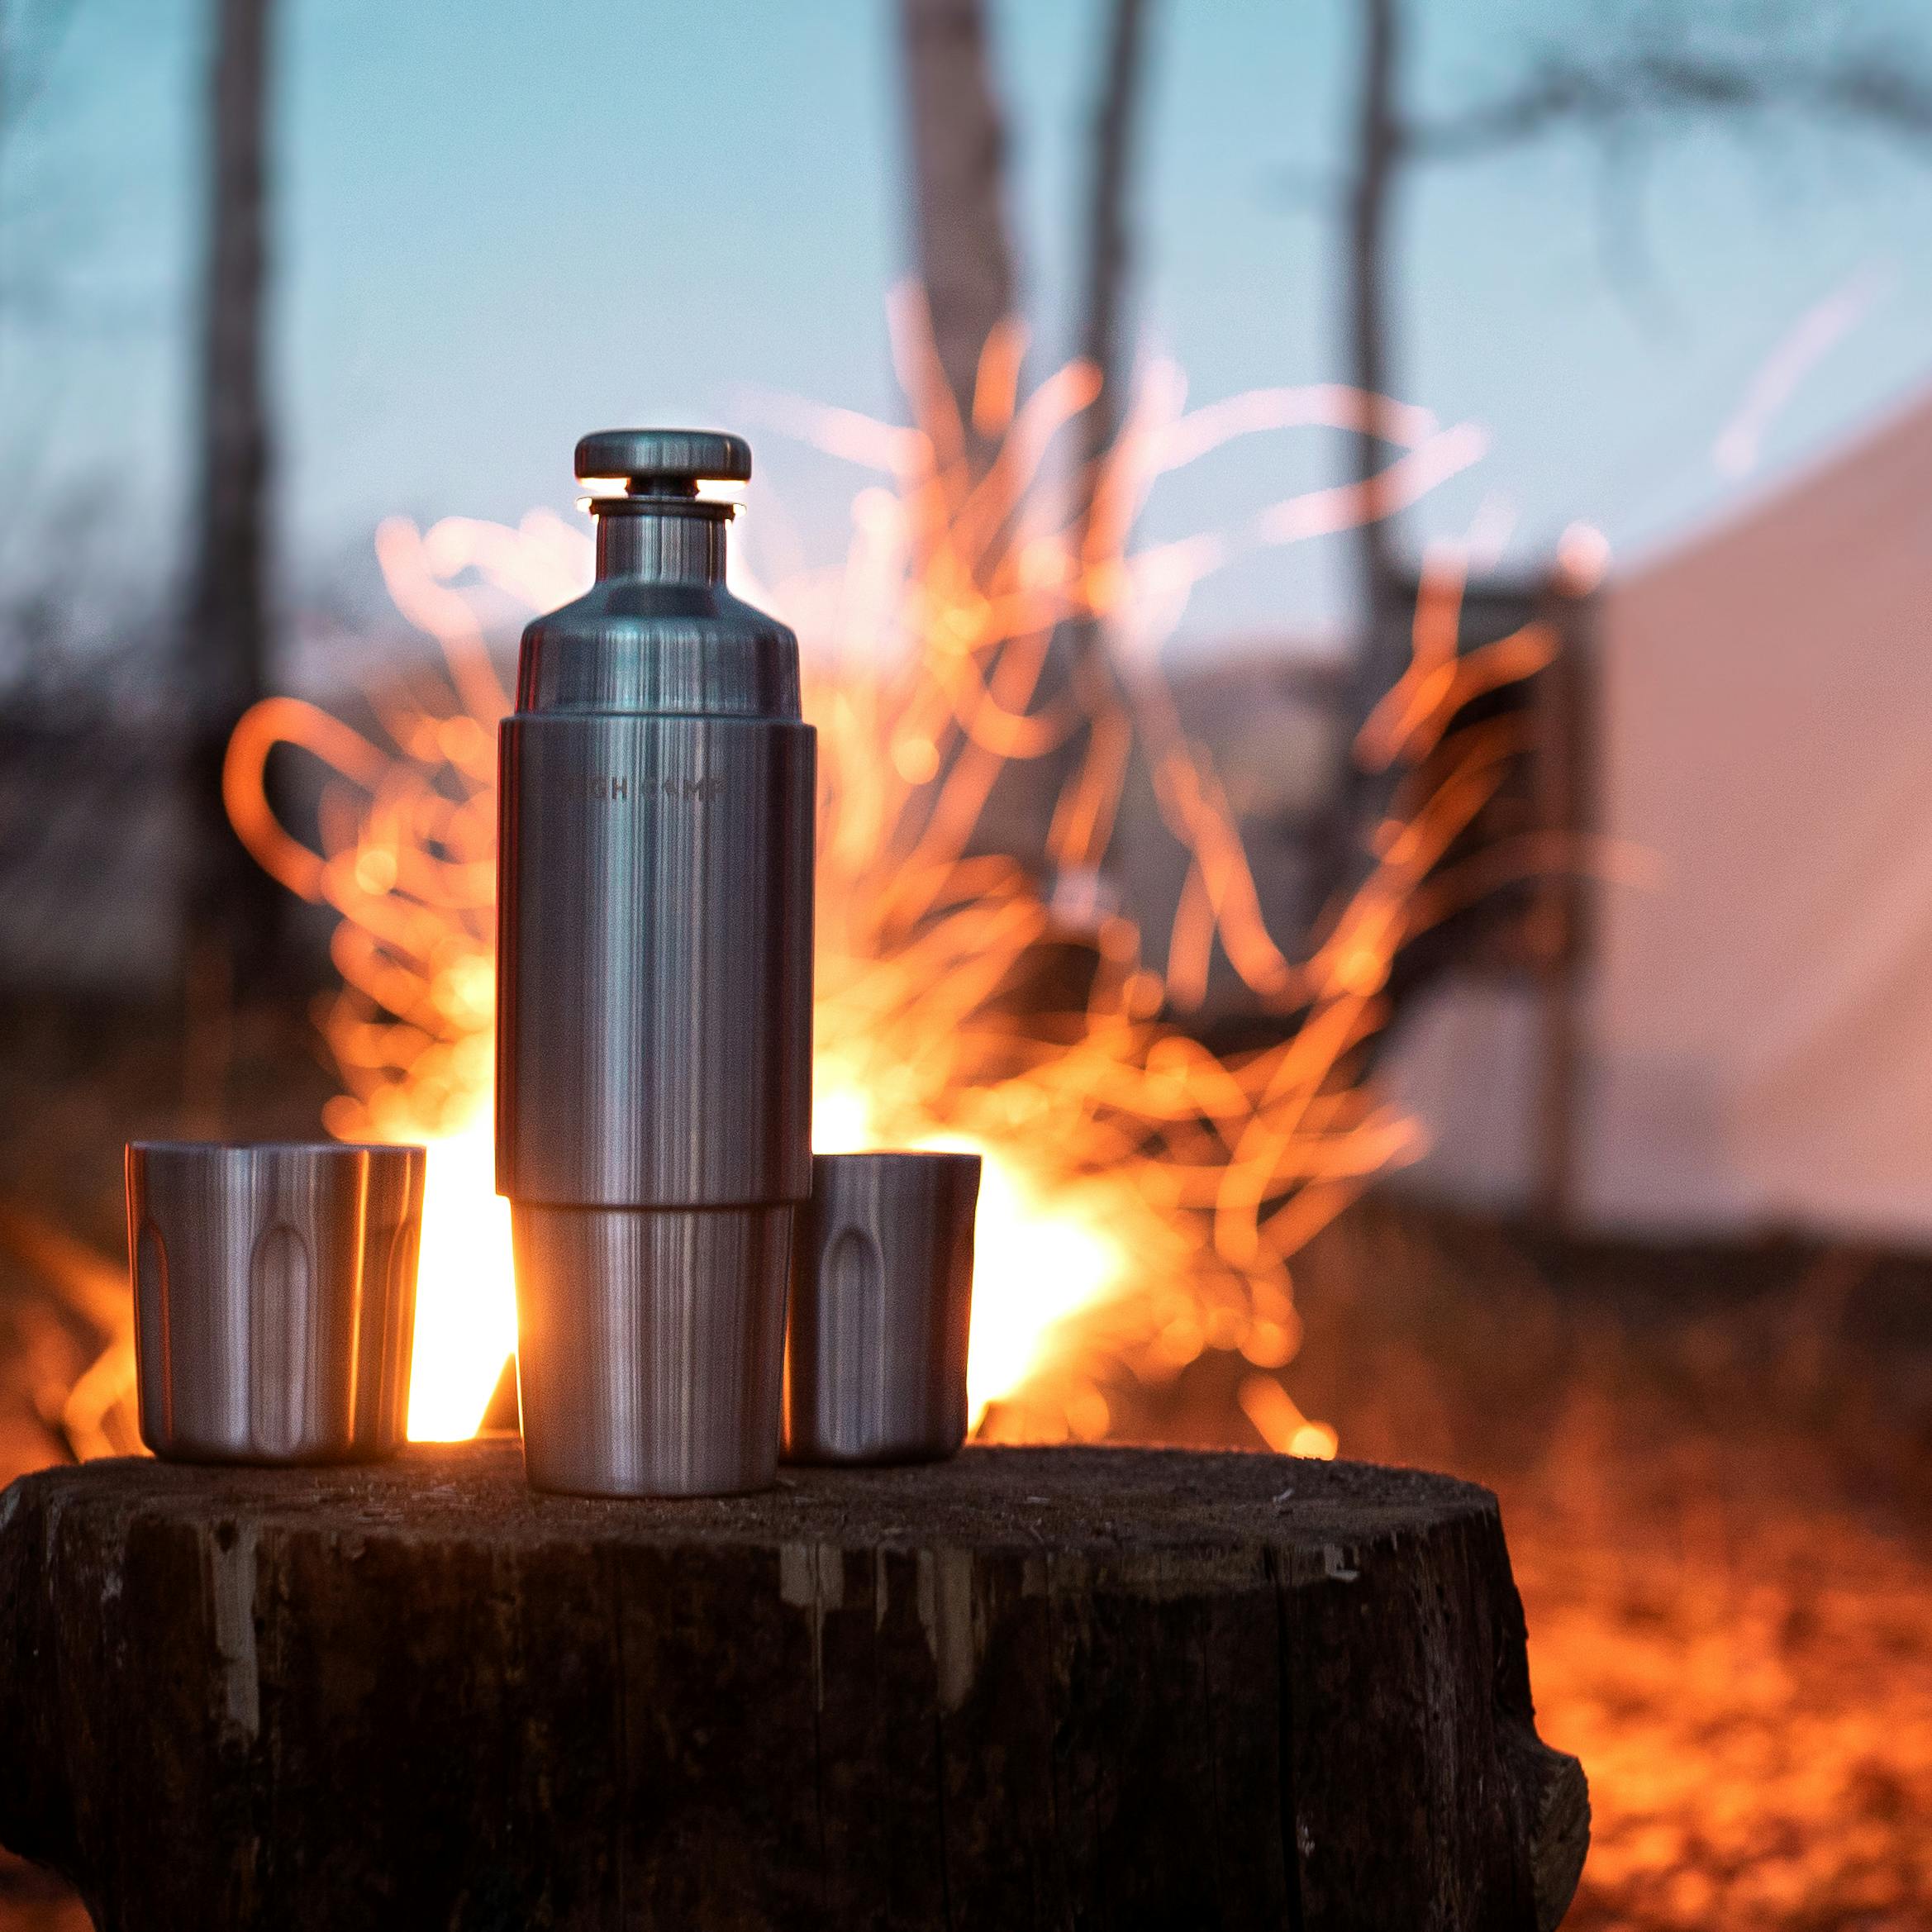 The High Camp Firelight 750 Flask — hatchet & lantern